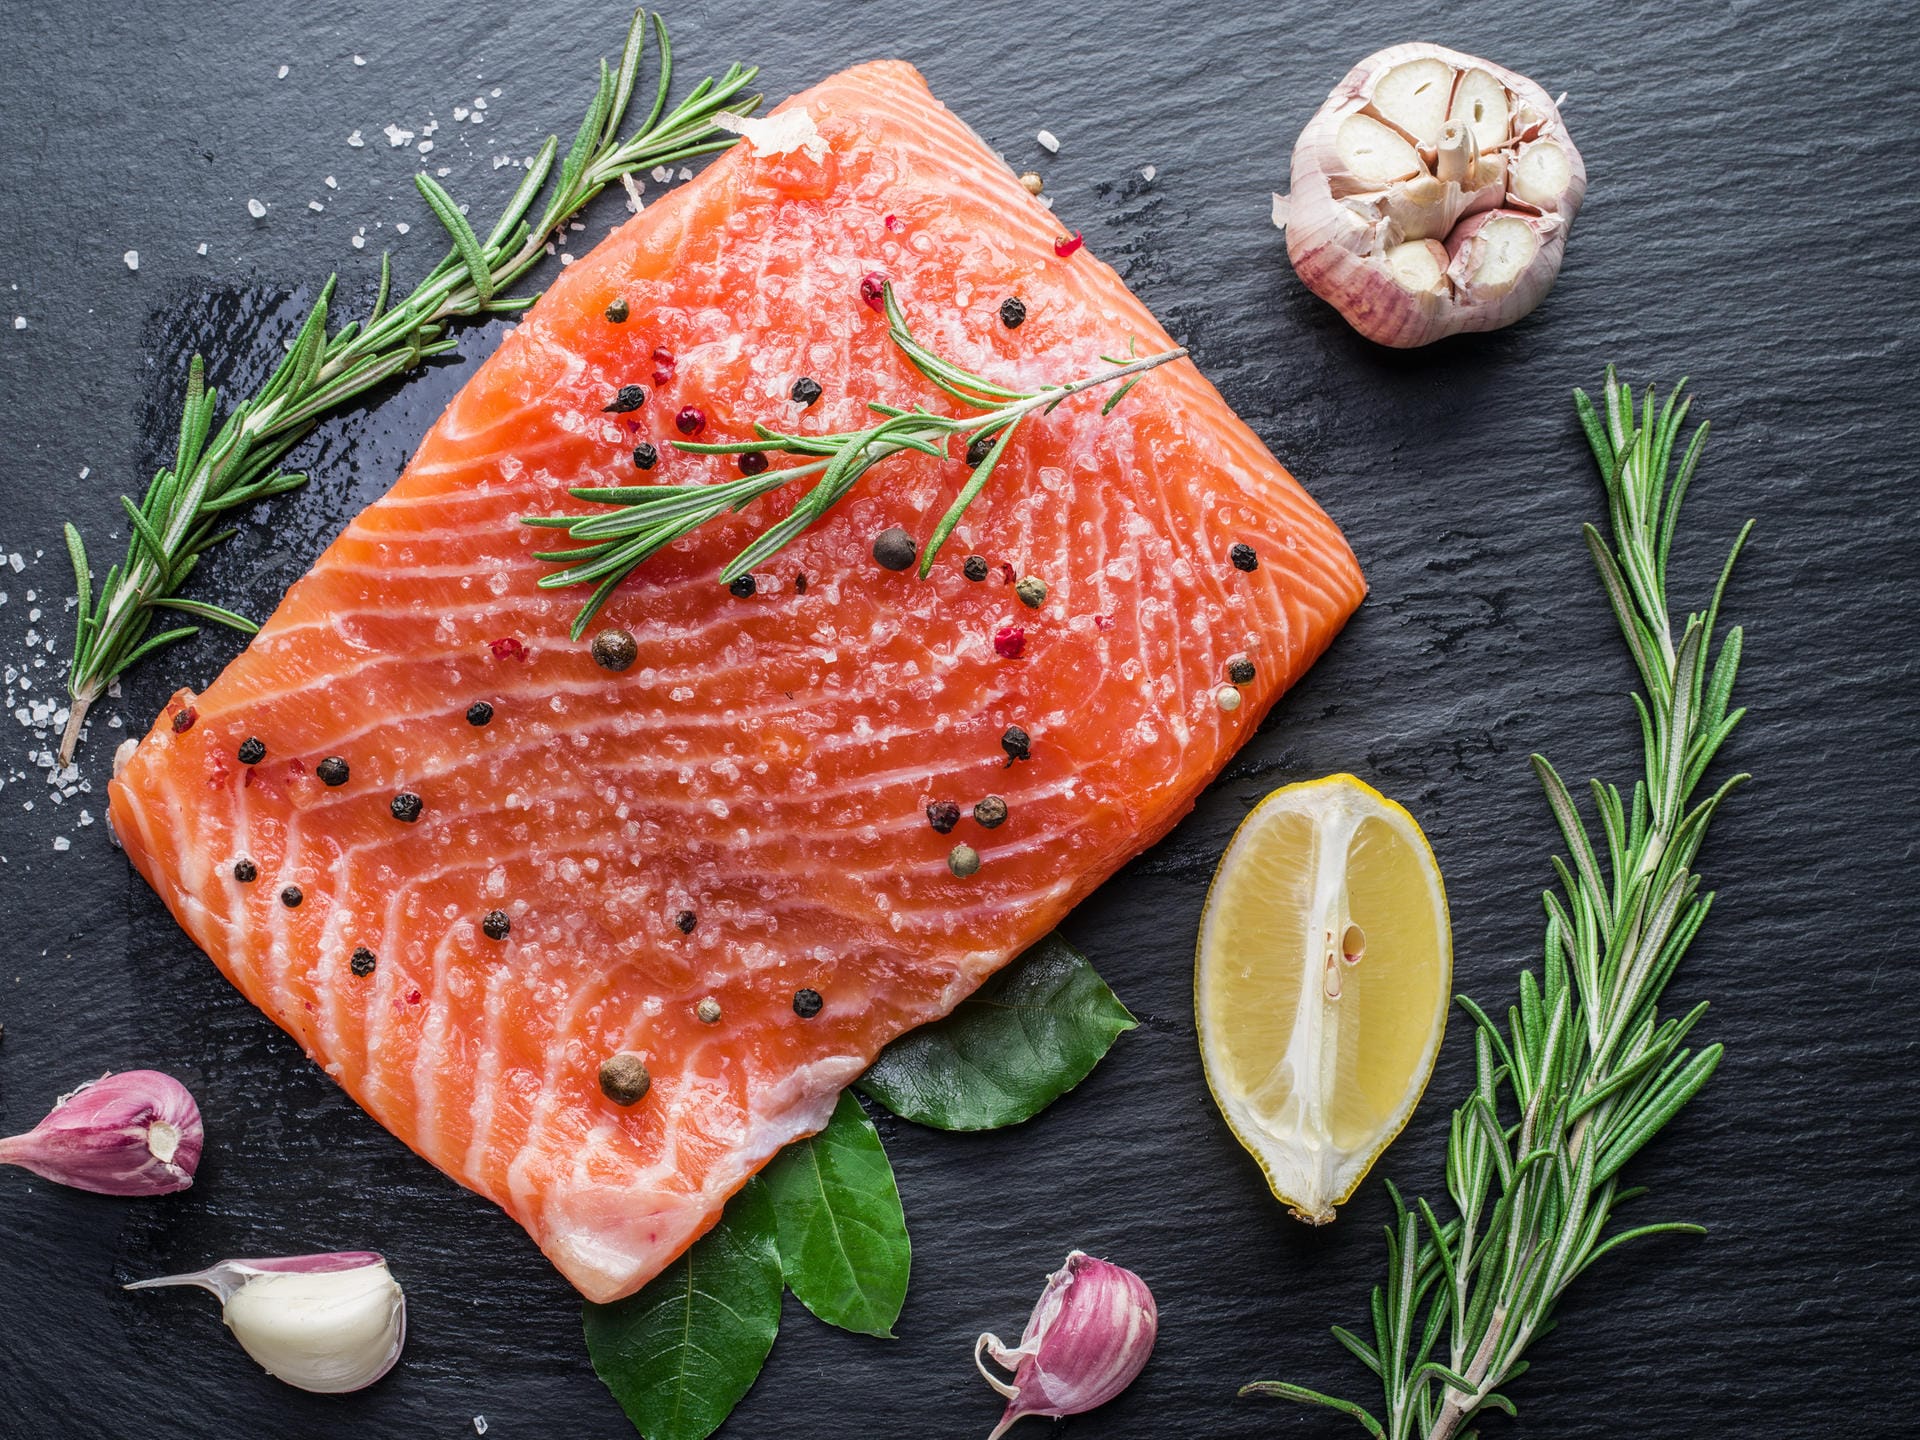 Lebensmittel mit Omega-3-Fettsäuren in den Ernährungsplan integrieren – wie beispielsweise Lachs, Thunfisch, Walnüsse, Chiasamen. Omega-3-Fettsäuren wirken entzündungshemmend und lindern Schmerzen.